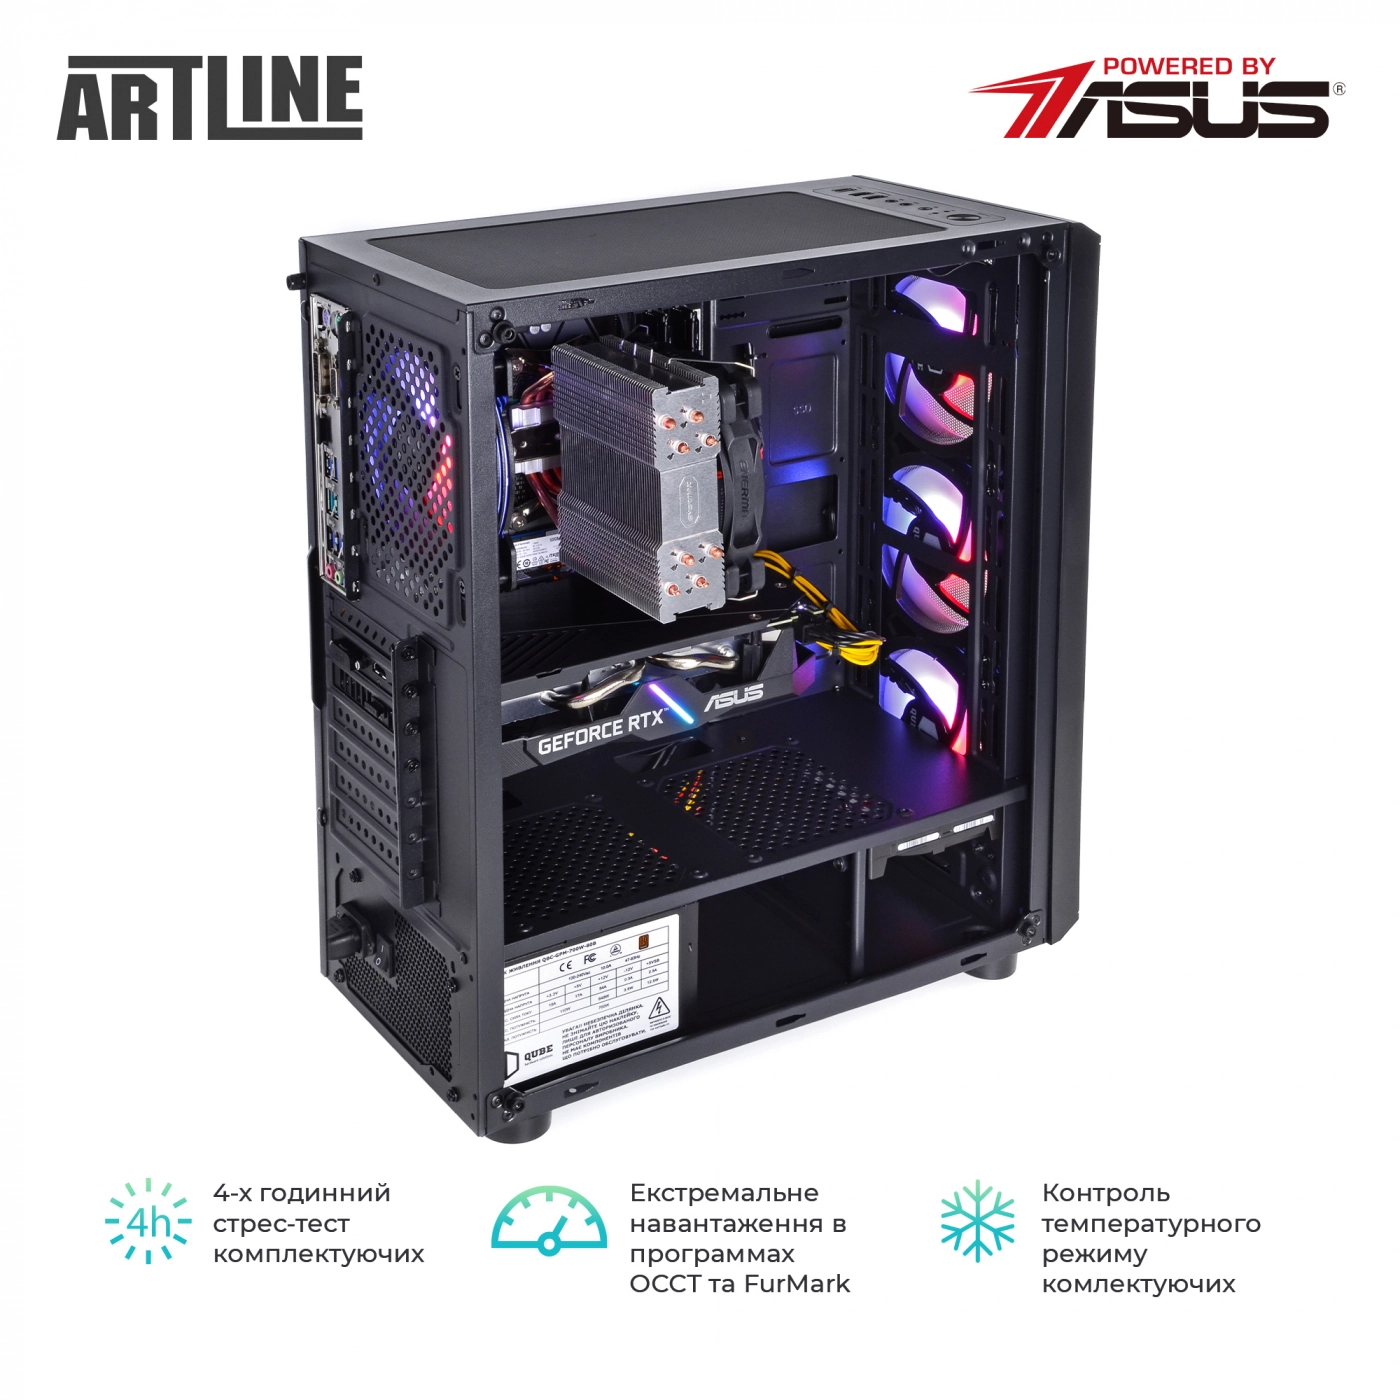 Купить Компьютер ARTLINE Gaming X57v35 - фото 9